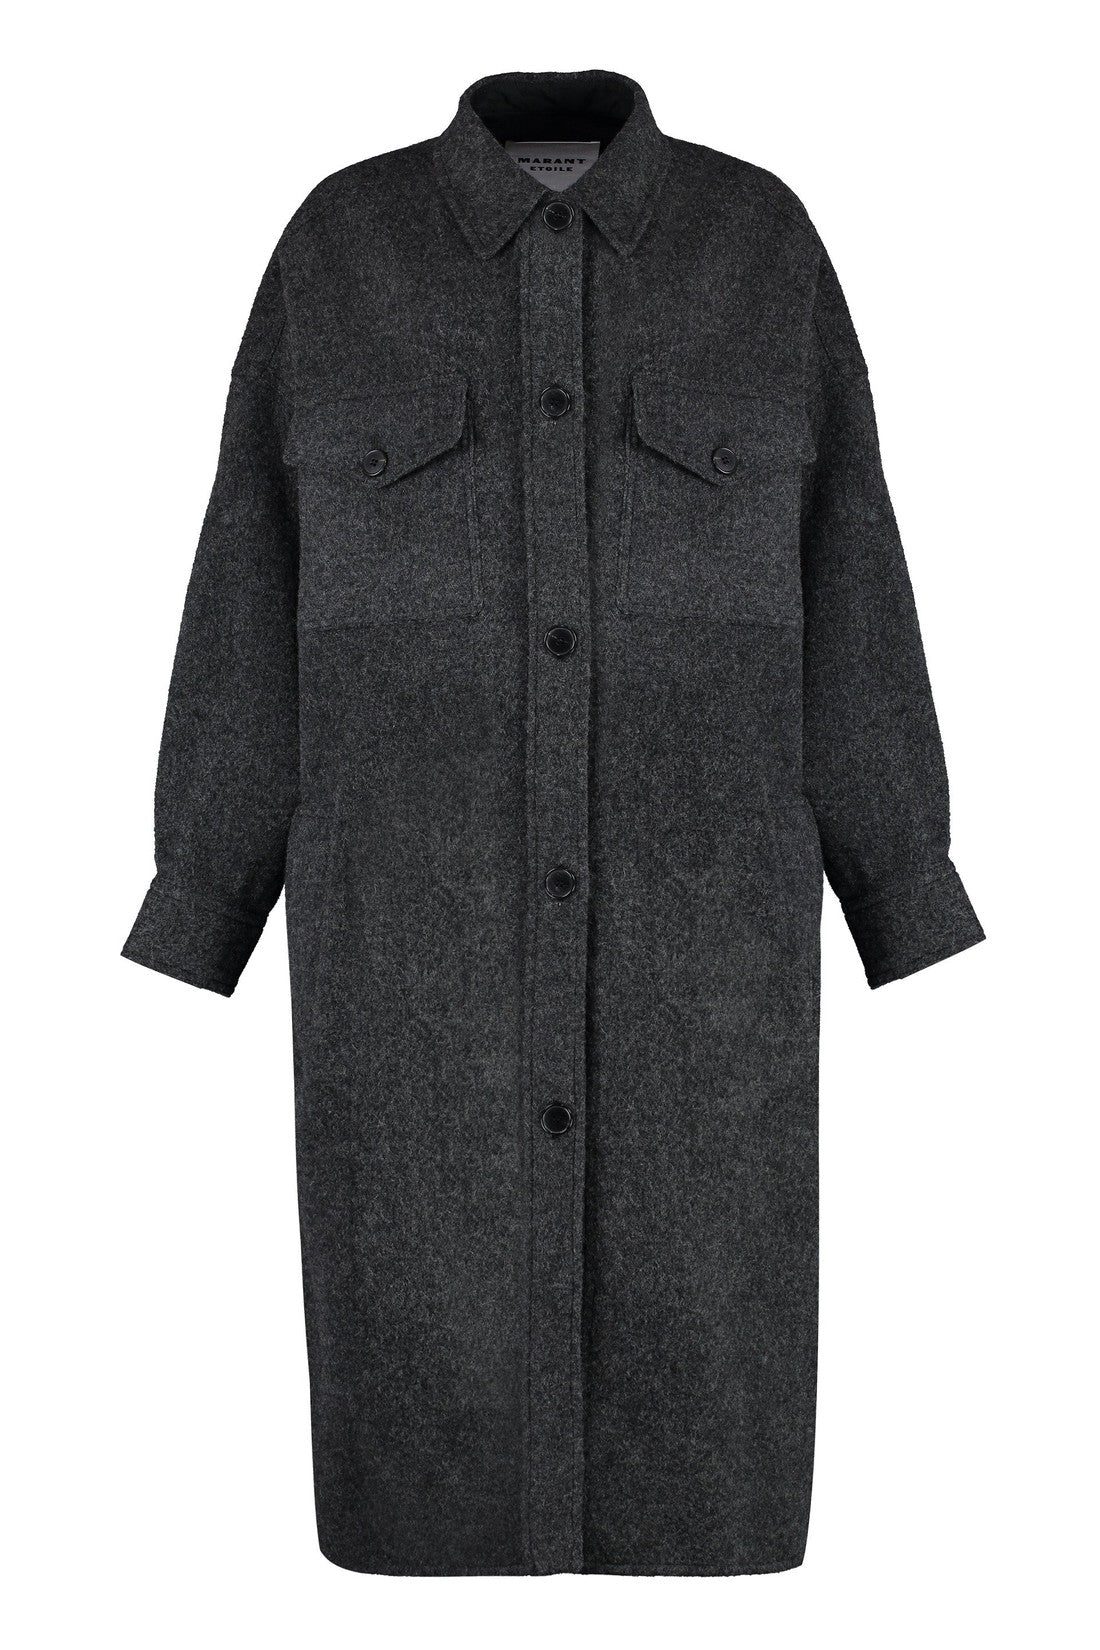 Isabel Marant Étoile-OUTLET-SALE-Fontizi wool blend coat-ARCHIVIST